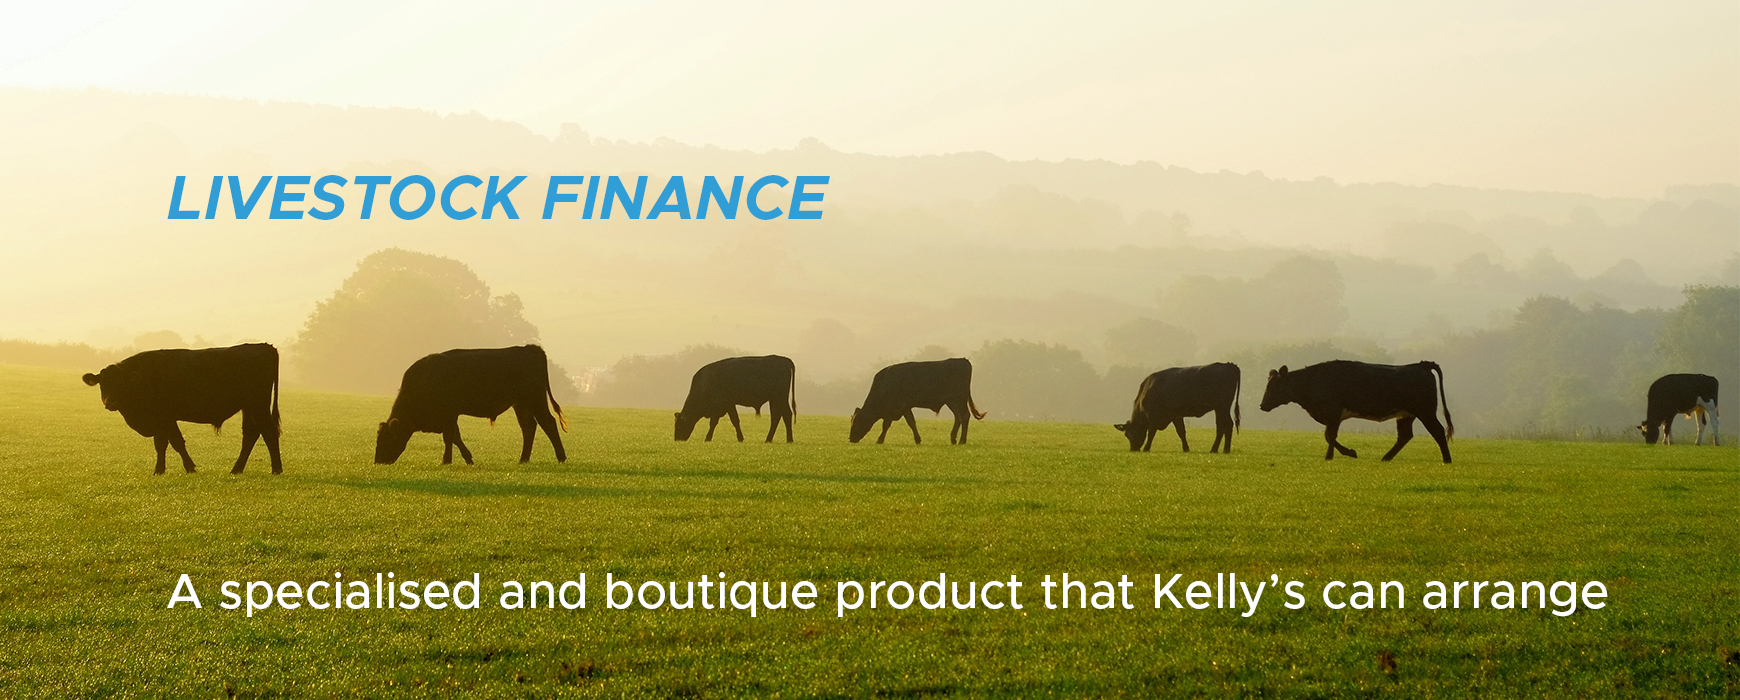 Livestock-Finance